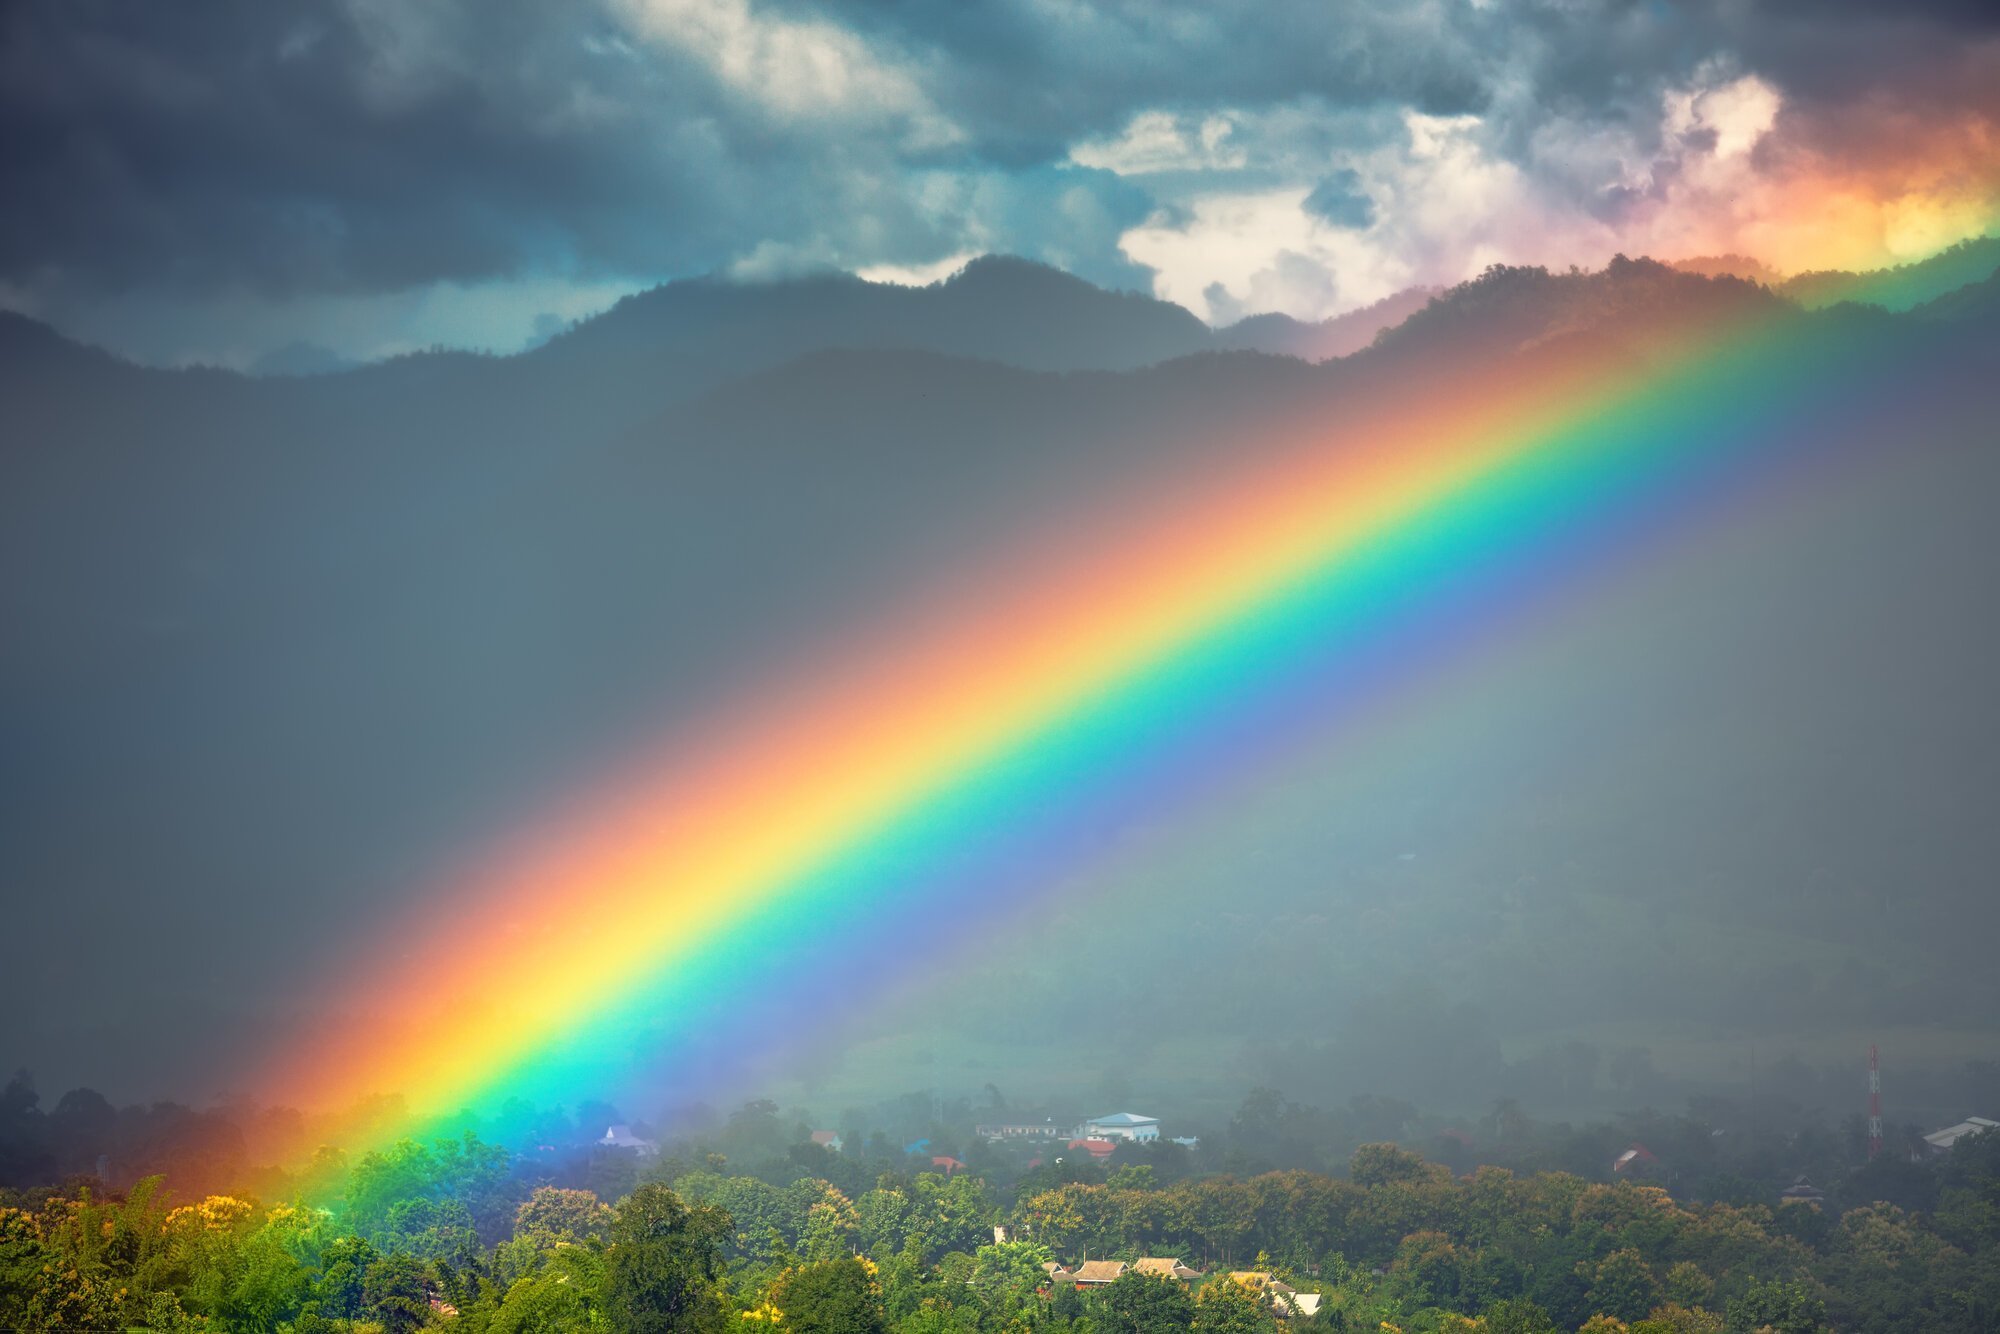 Sonhar com arco-iris 13 SONHOS explicados com seus DIVERSOS significados